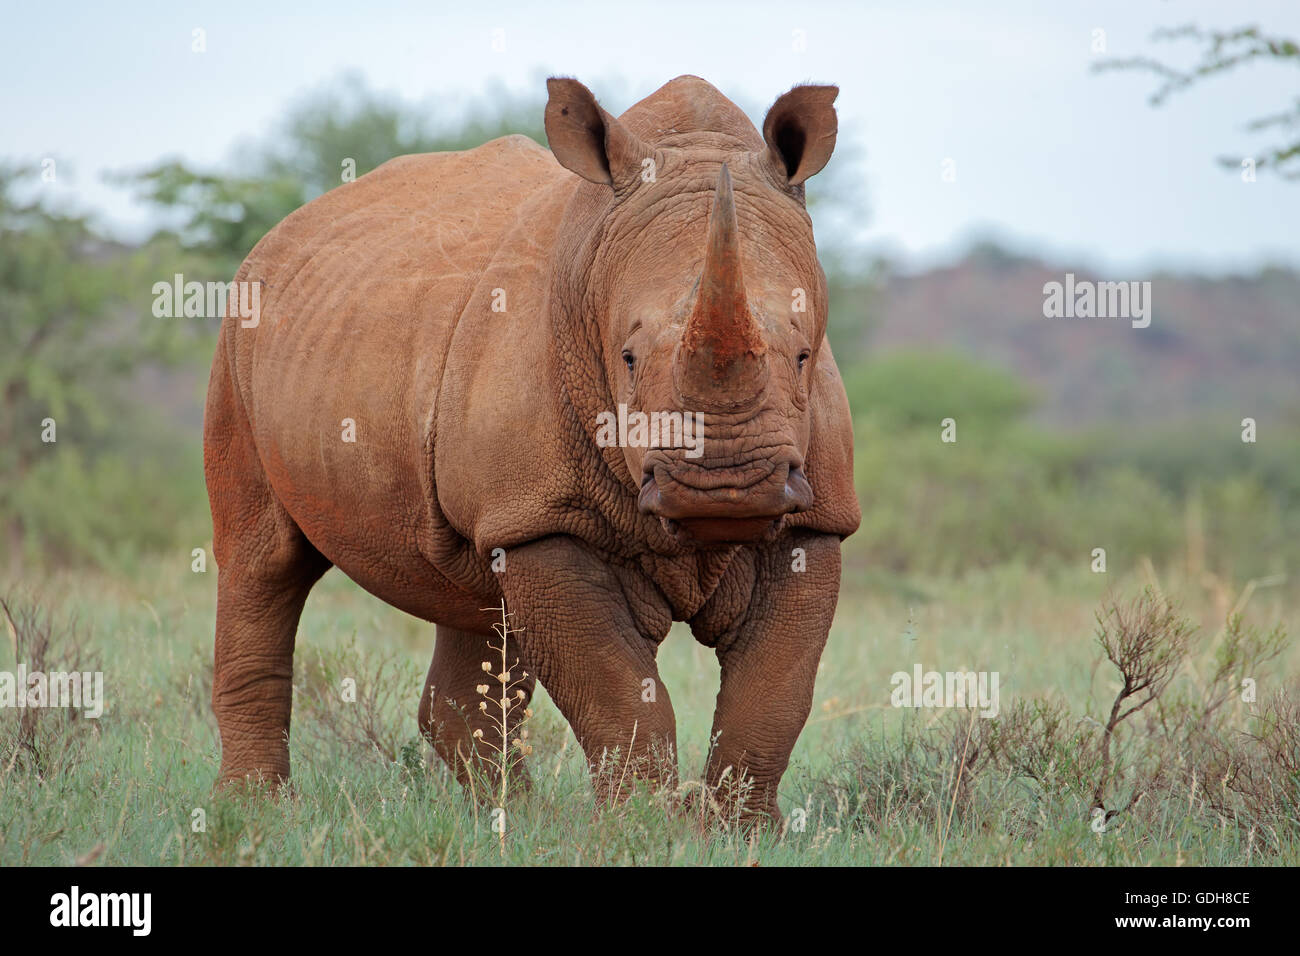 A white rhinoceros (Ceratotherium simum) in natural habitat, South Africa Stock Photo